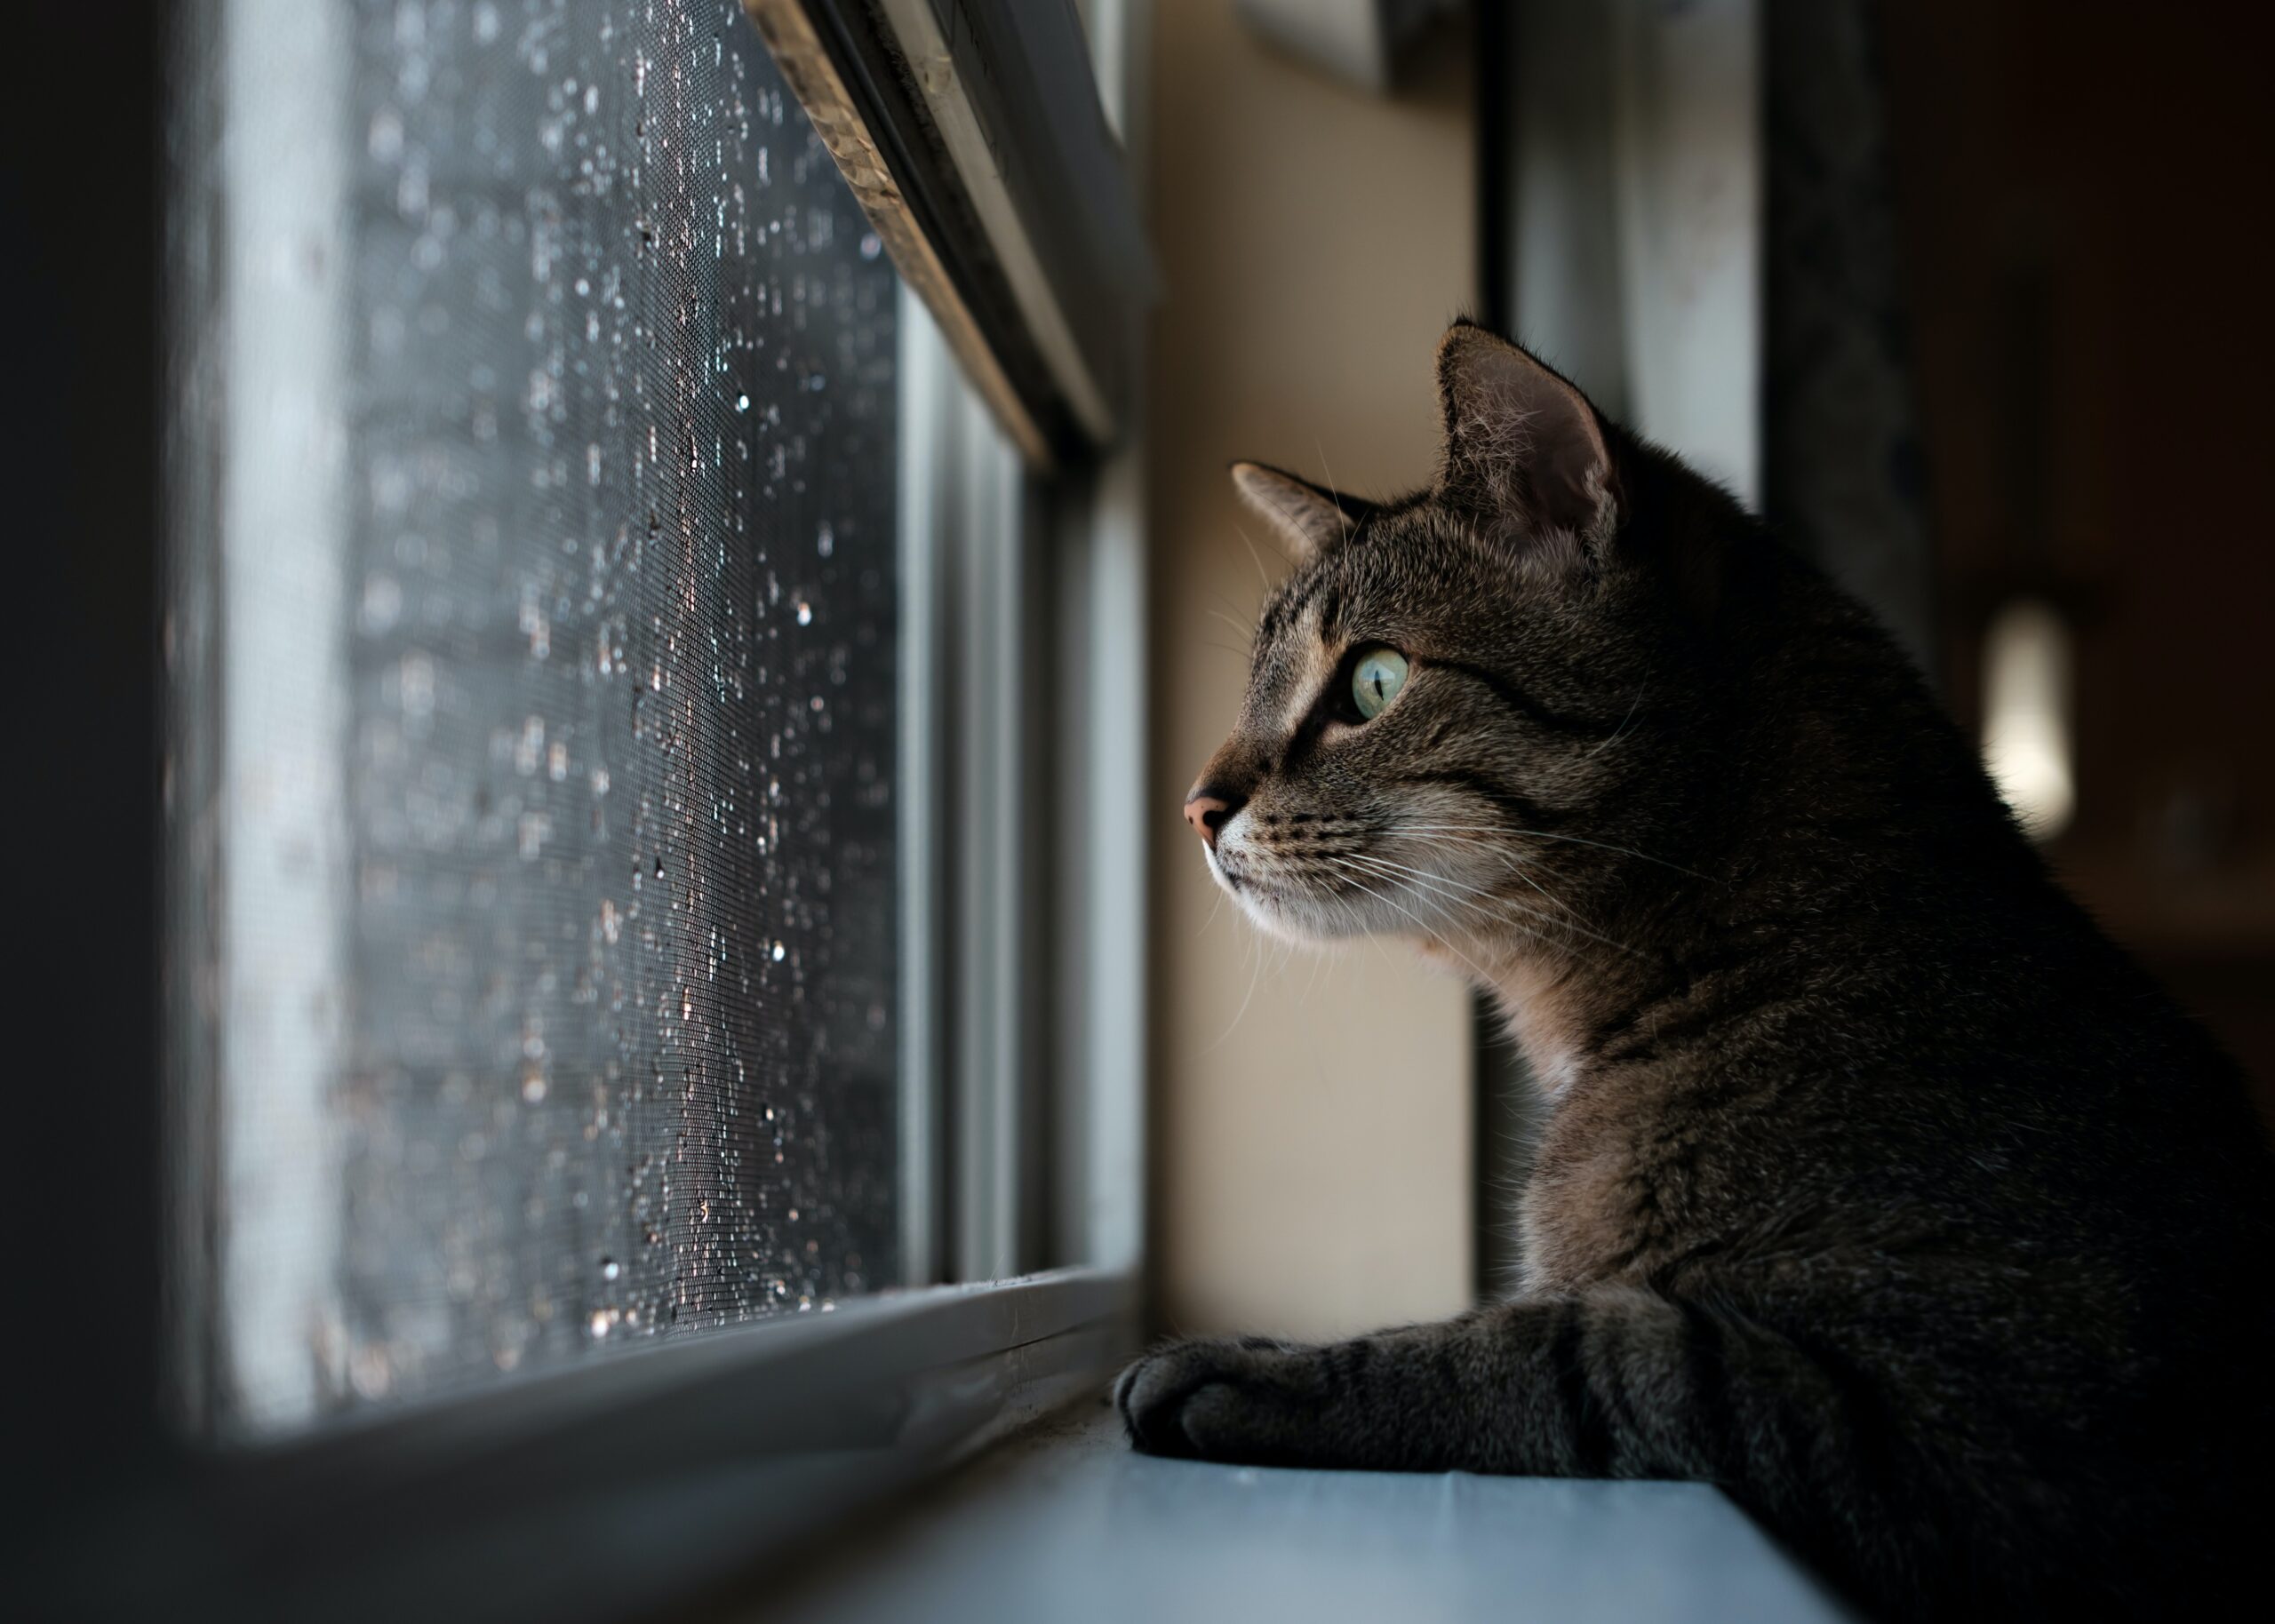 Belső ablakpárkányon támaszkodó macska